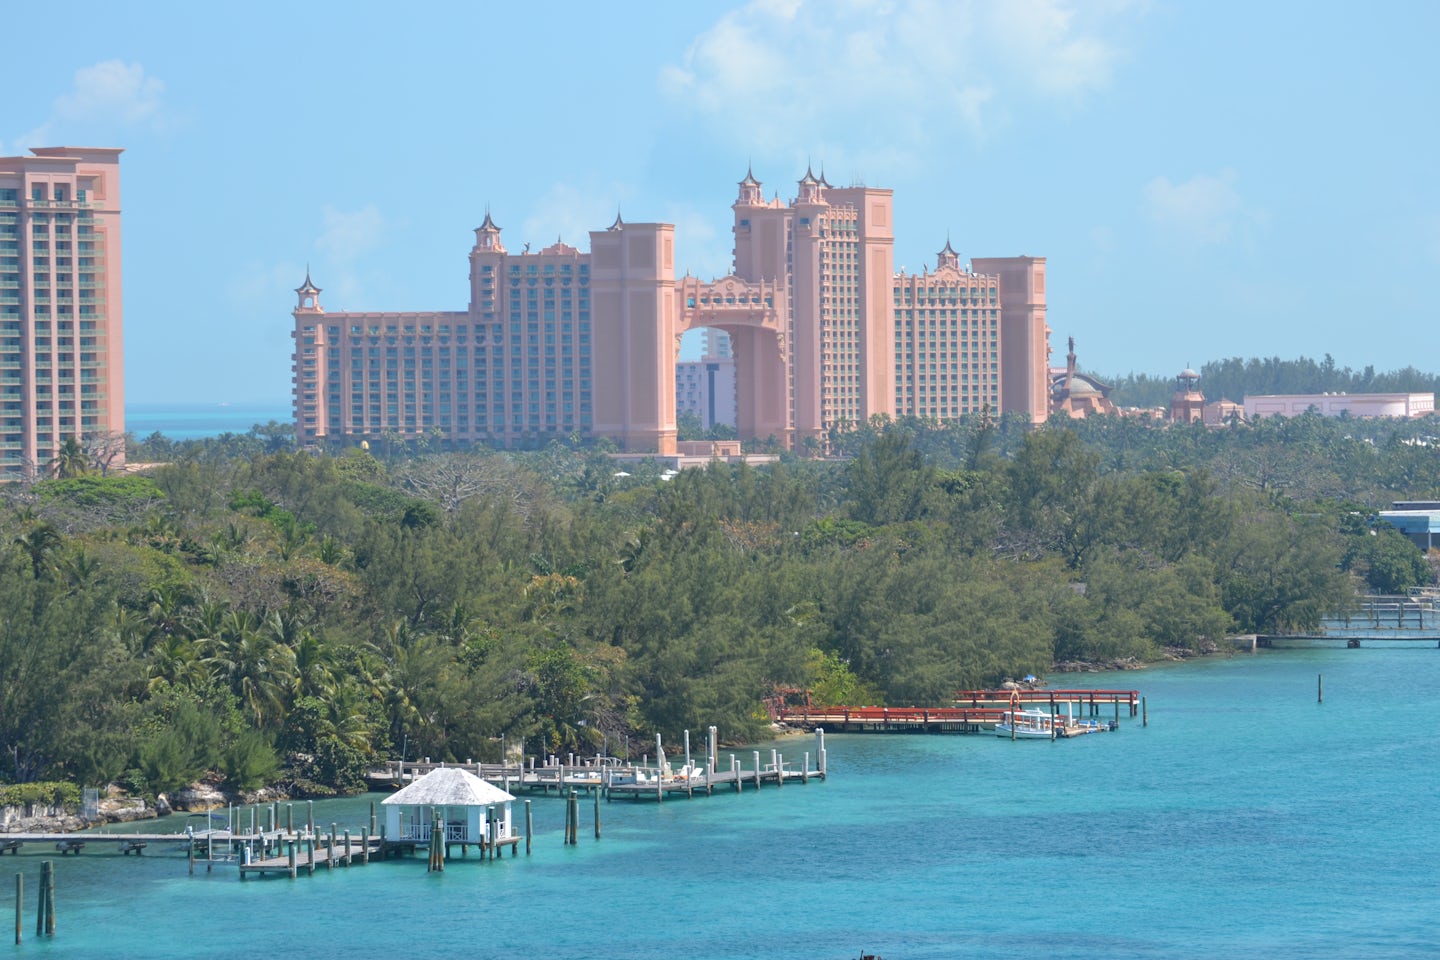 Docked in Nassau, Atlantis in the background.